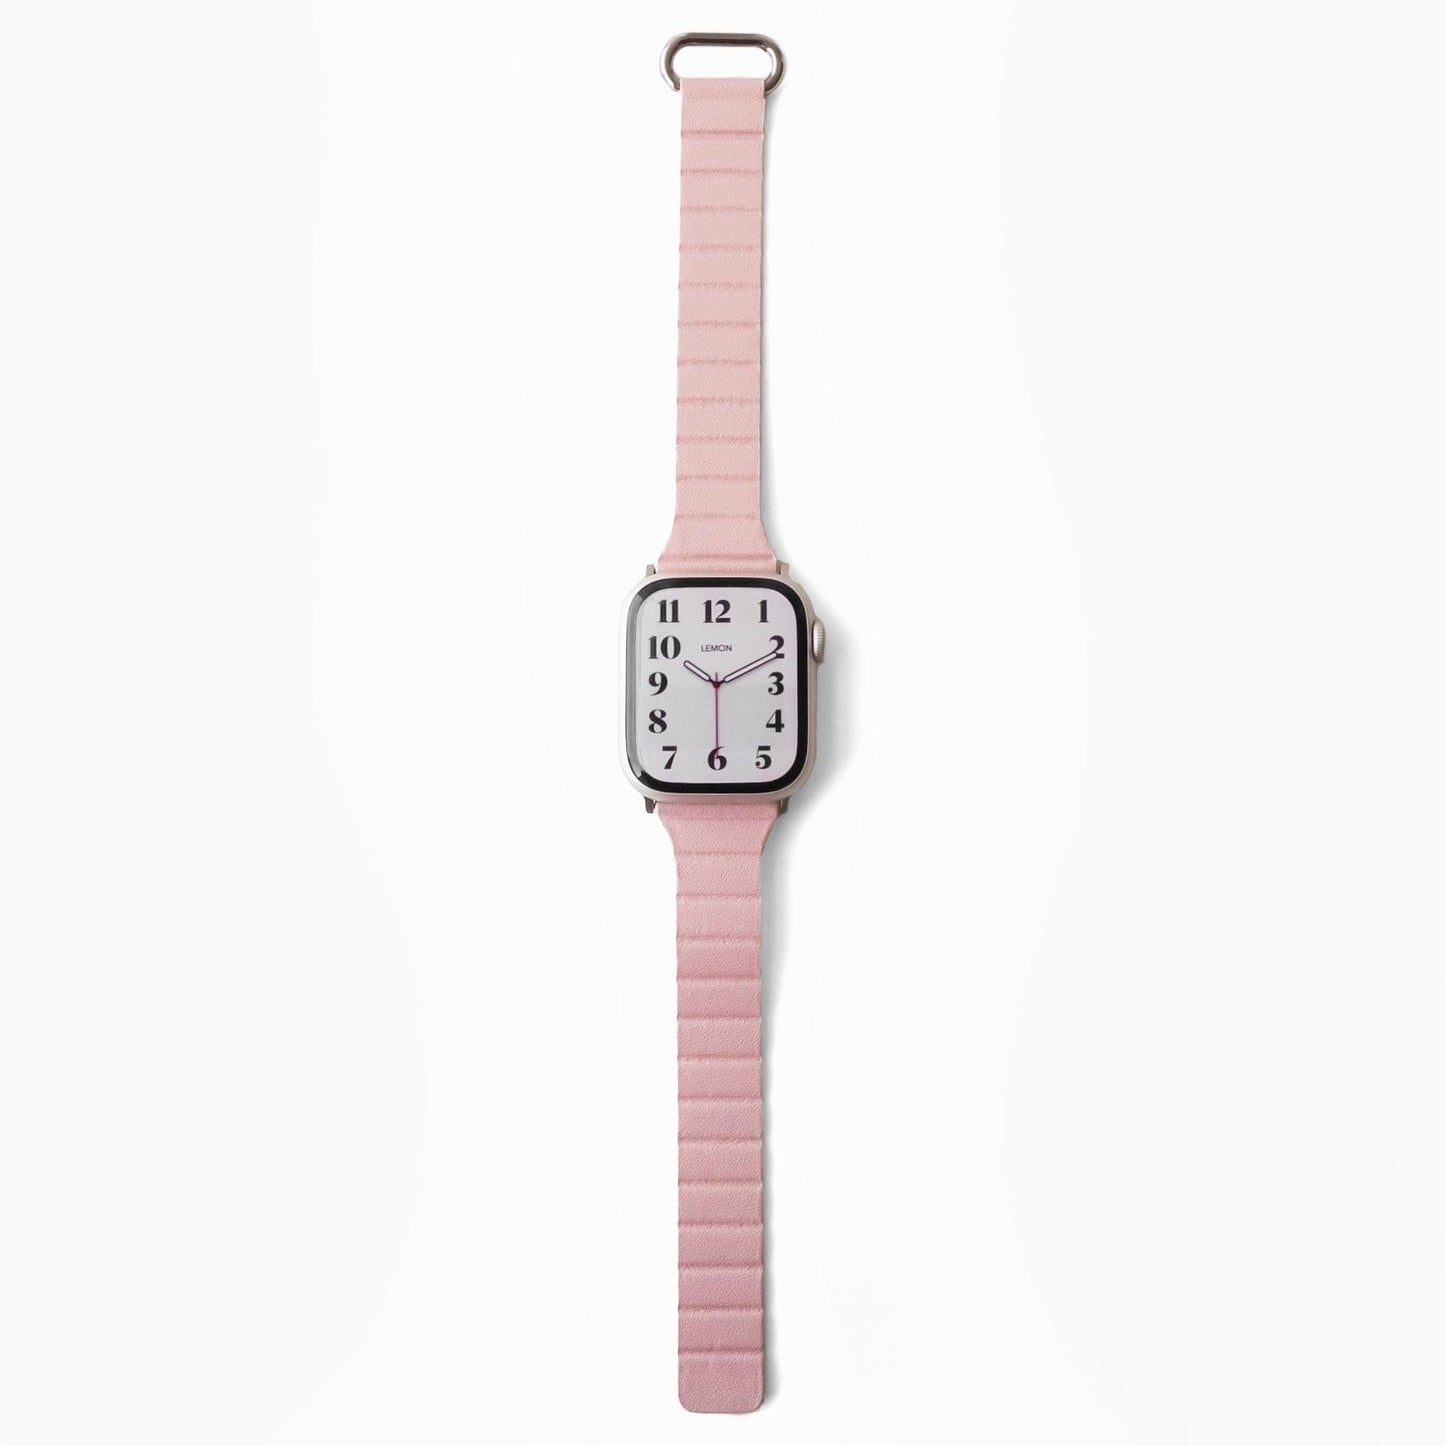 Slim Snap Loop Apple Watch Band - Pink